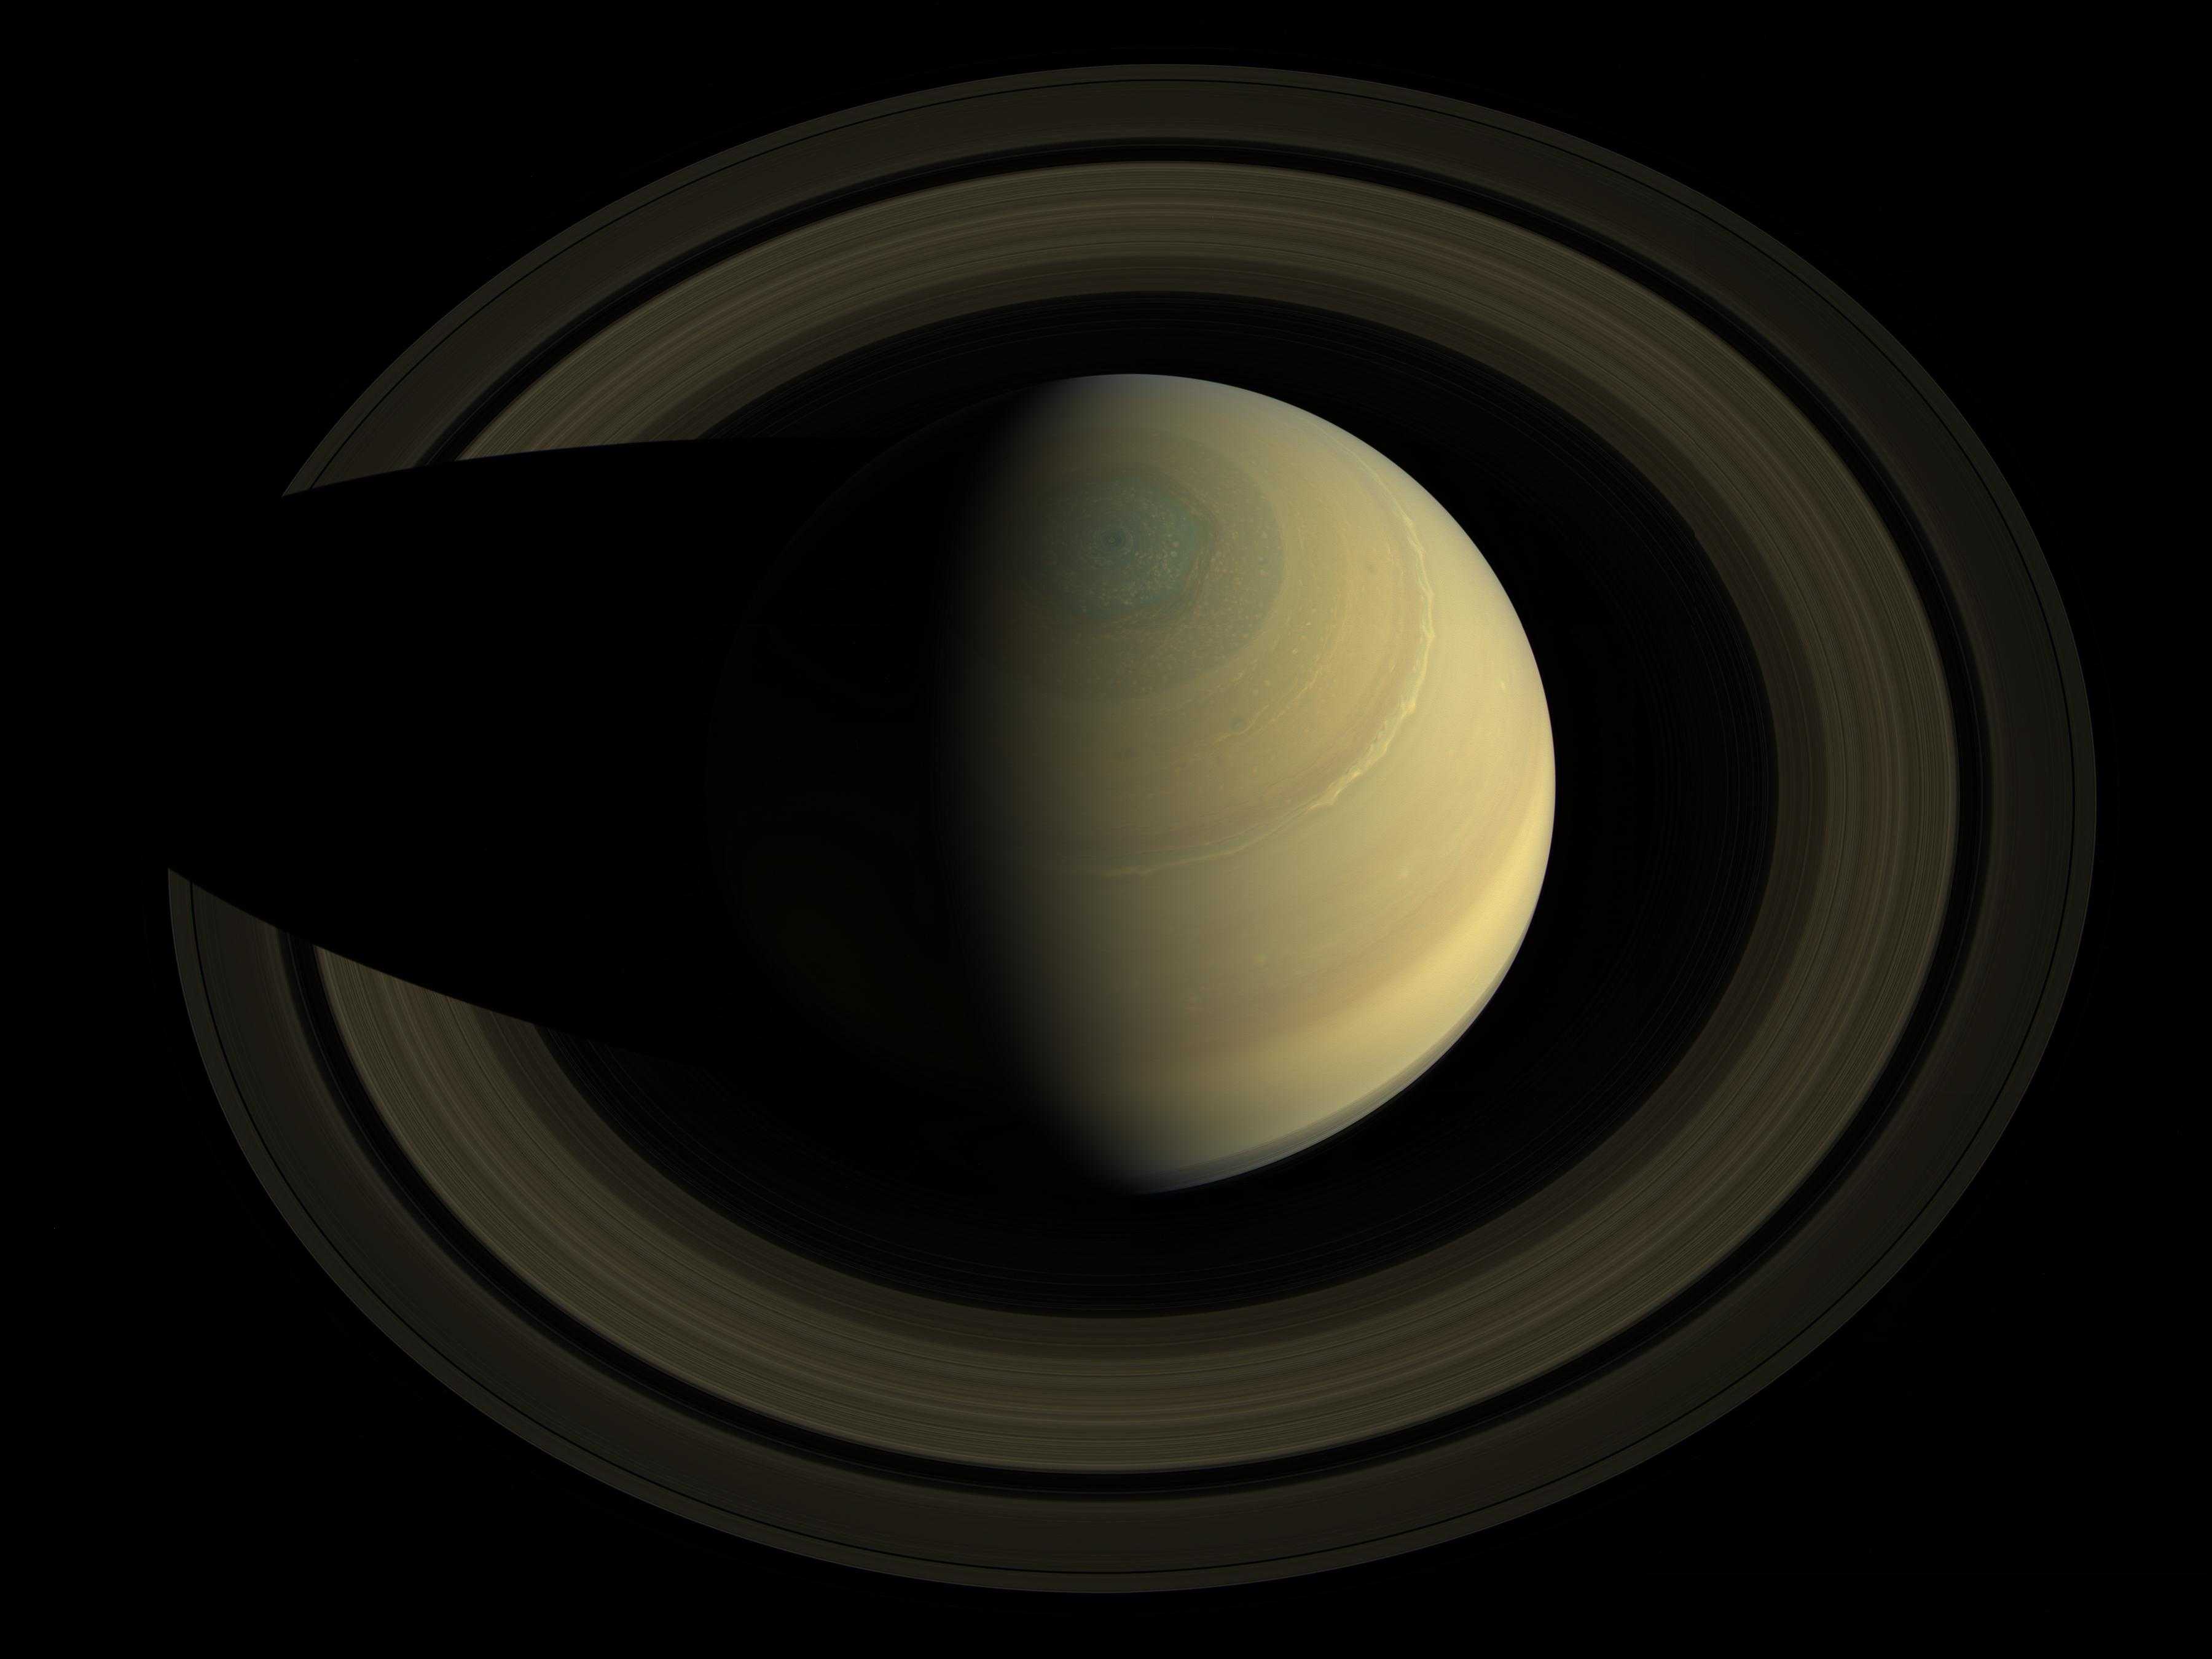 Кольца Сатурна в контровом свете и хорошем качестве: полная компиляция снимков «Кассини»